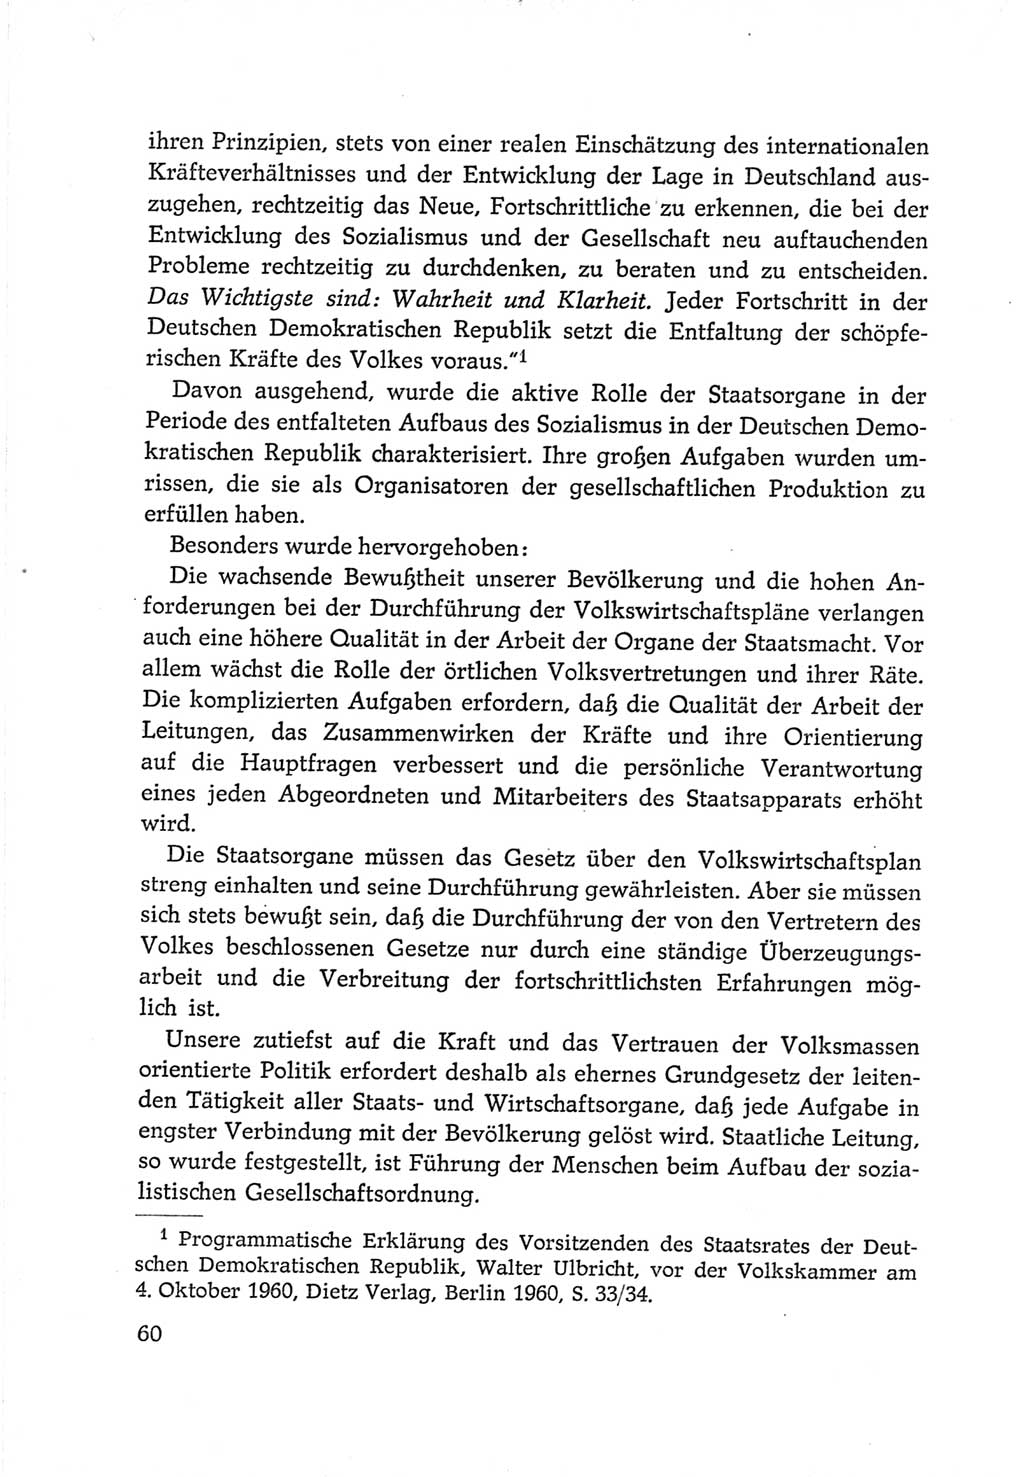 Protokoll der Verhandlungen des Ⅵ. Parteitages der Sozialistischen Einheitspartei Deutschlands (SED) [Deutsche Demokratische Republik (DDR)] 1963, Band Ⅳ, Seite 60 (Prot. Verh. Ⅵ. PT SED DDR 1963, Bd. Ⅳ, S. 60)